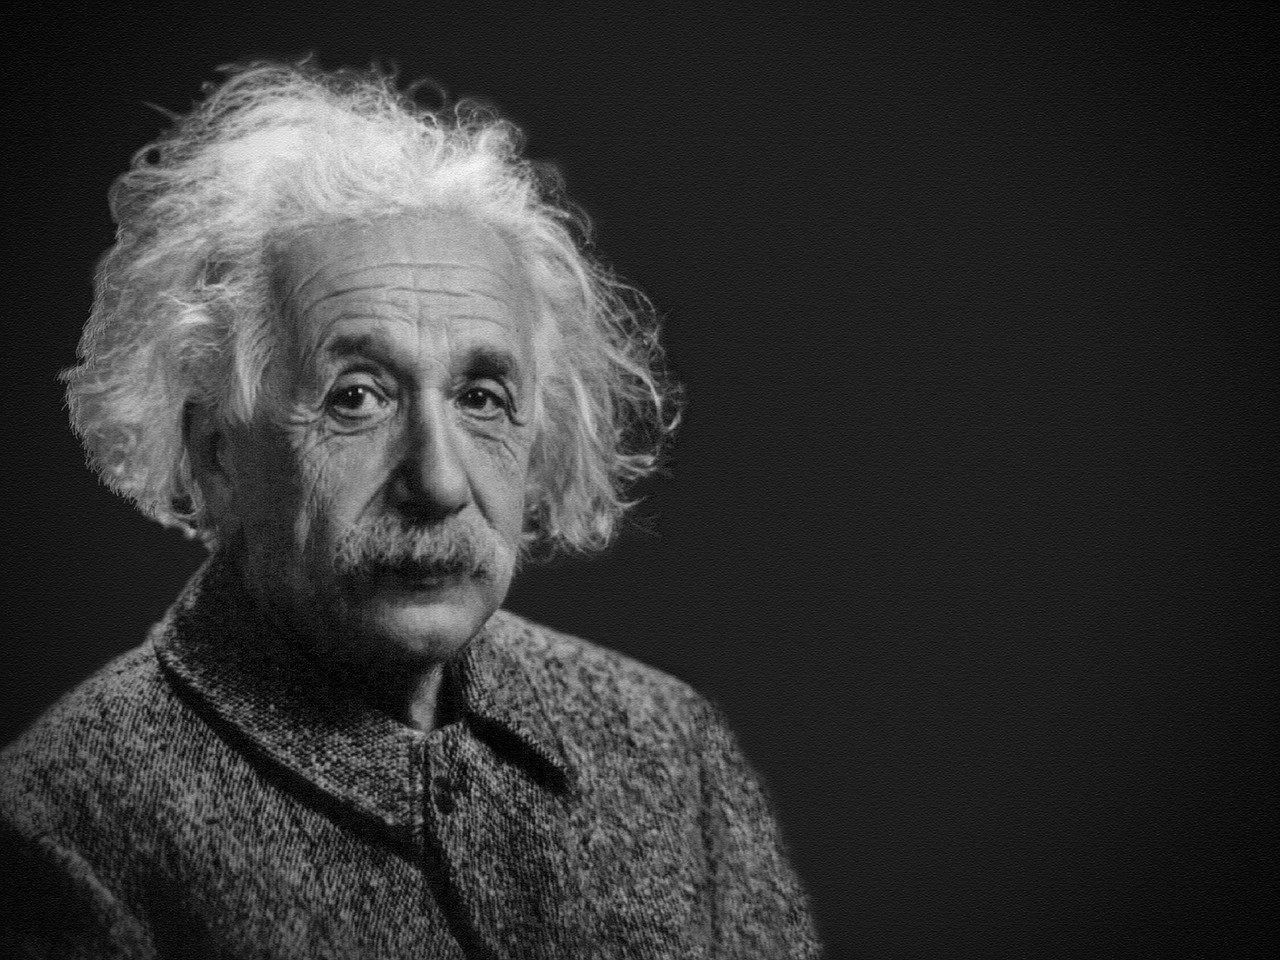 Az idős Albert Einstein fekete-fehér fényképe, amelyen hosszú, ősz haja és bajsza van